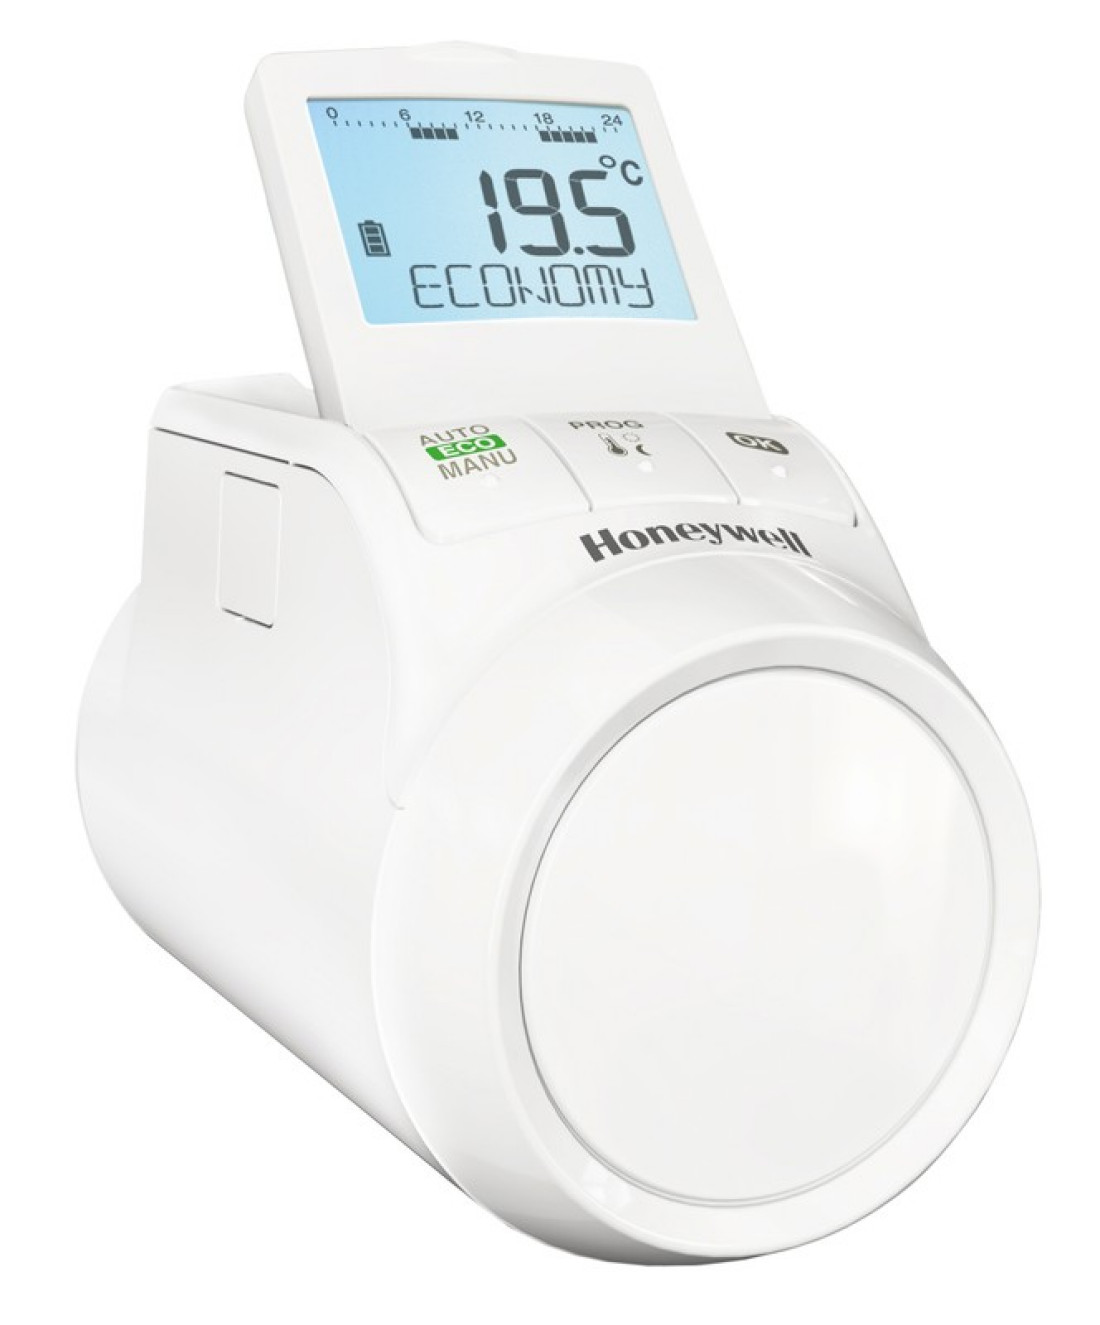 Nowa elektroniczna głowica termostatyczna Thera Pro HR90 od Honeywell